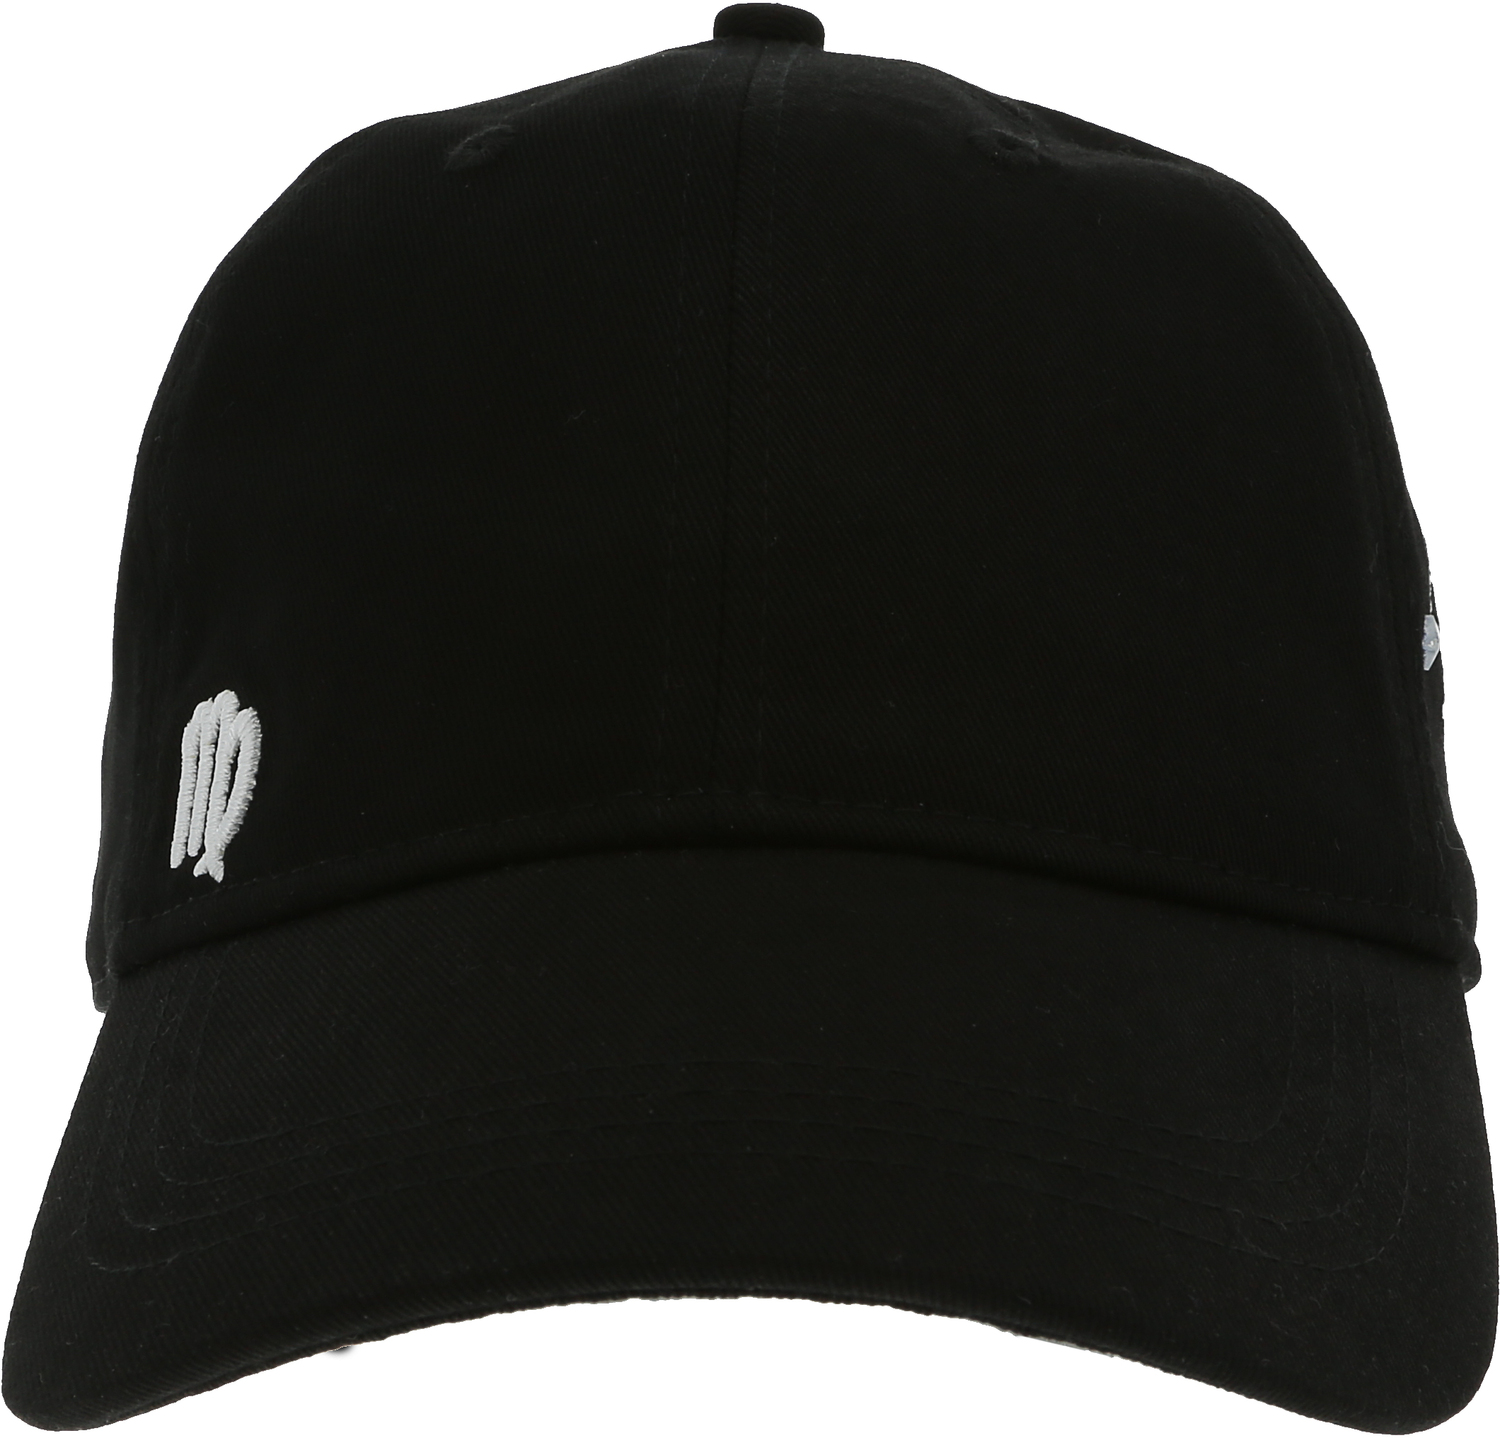 Virgo by You Are a Gem - Virgo - Black Adjustable Hat